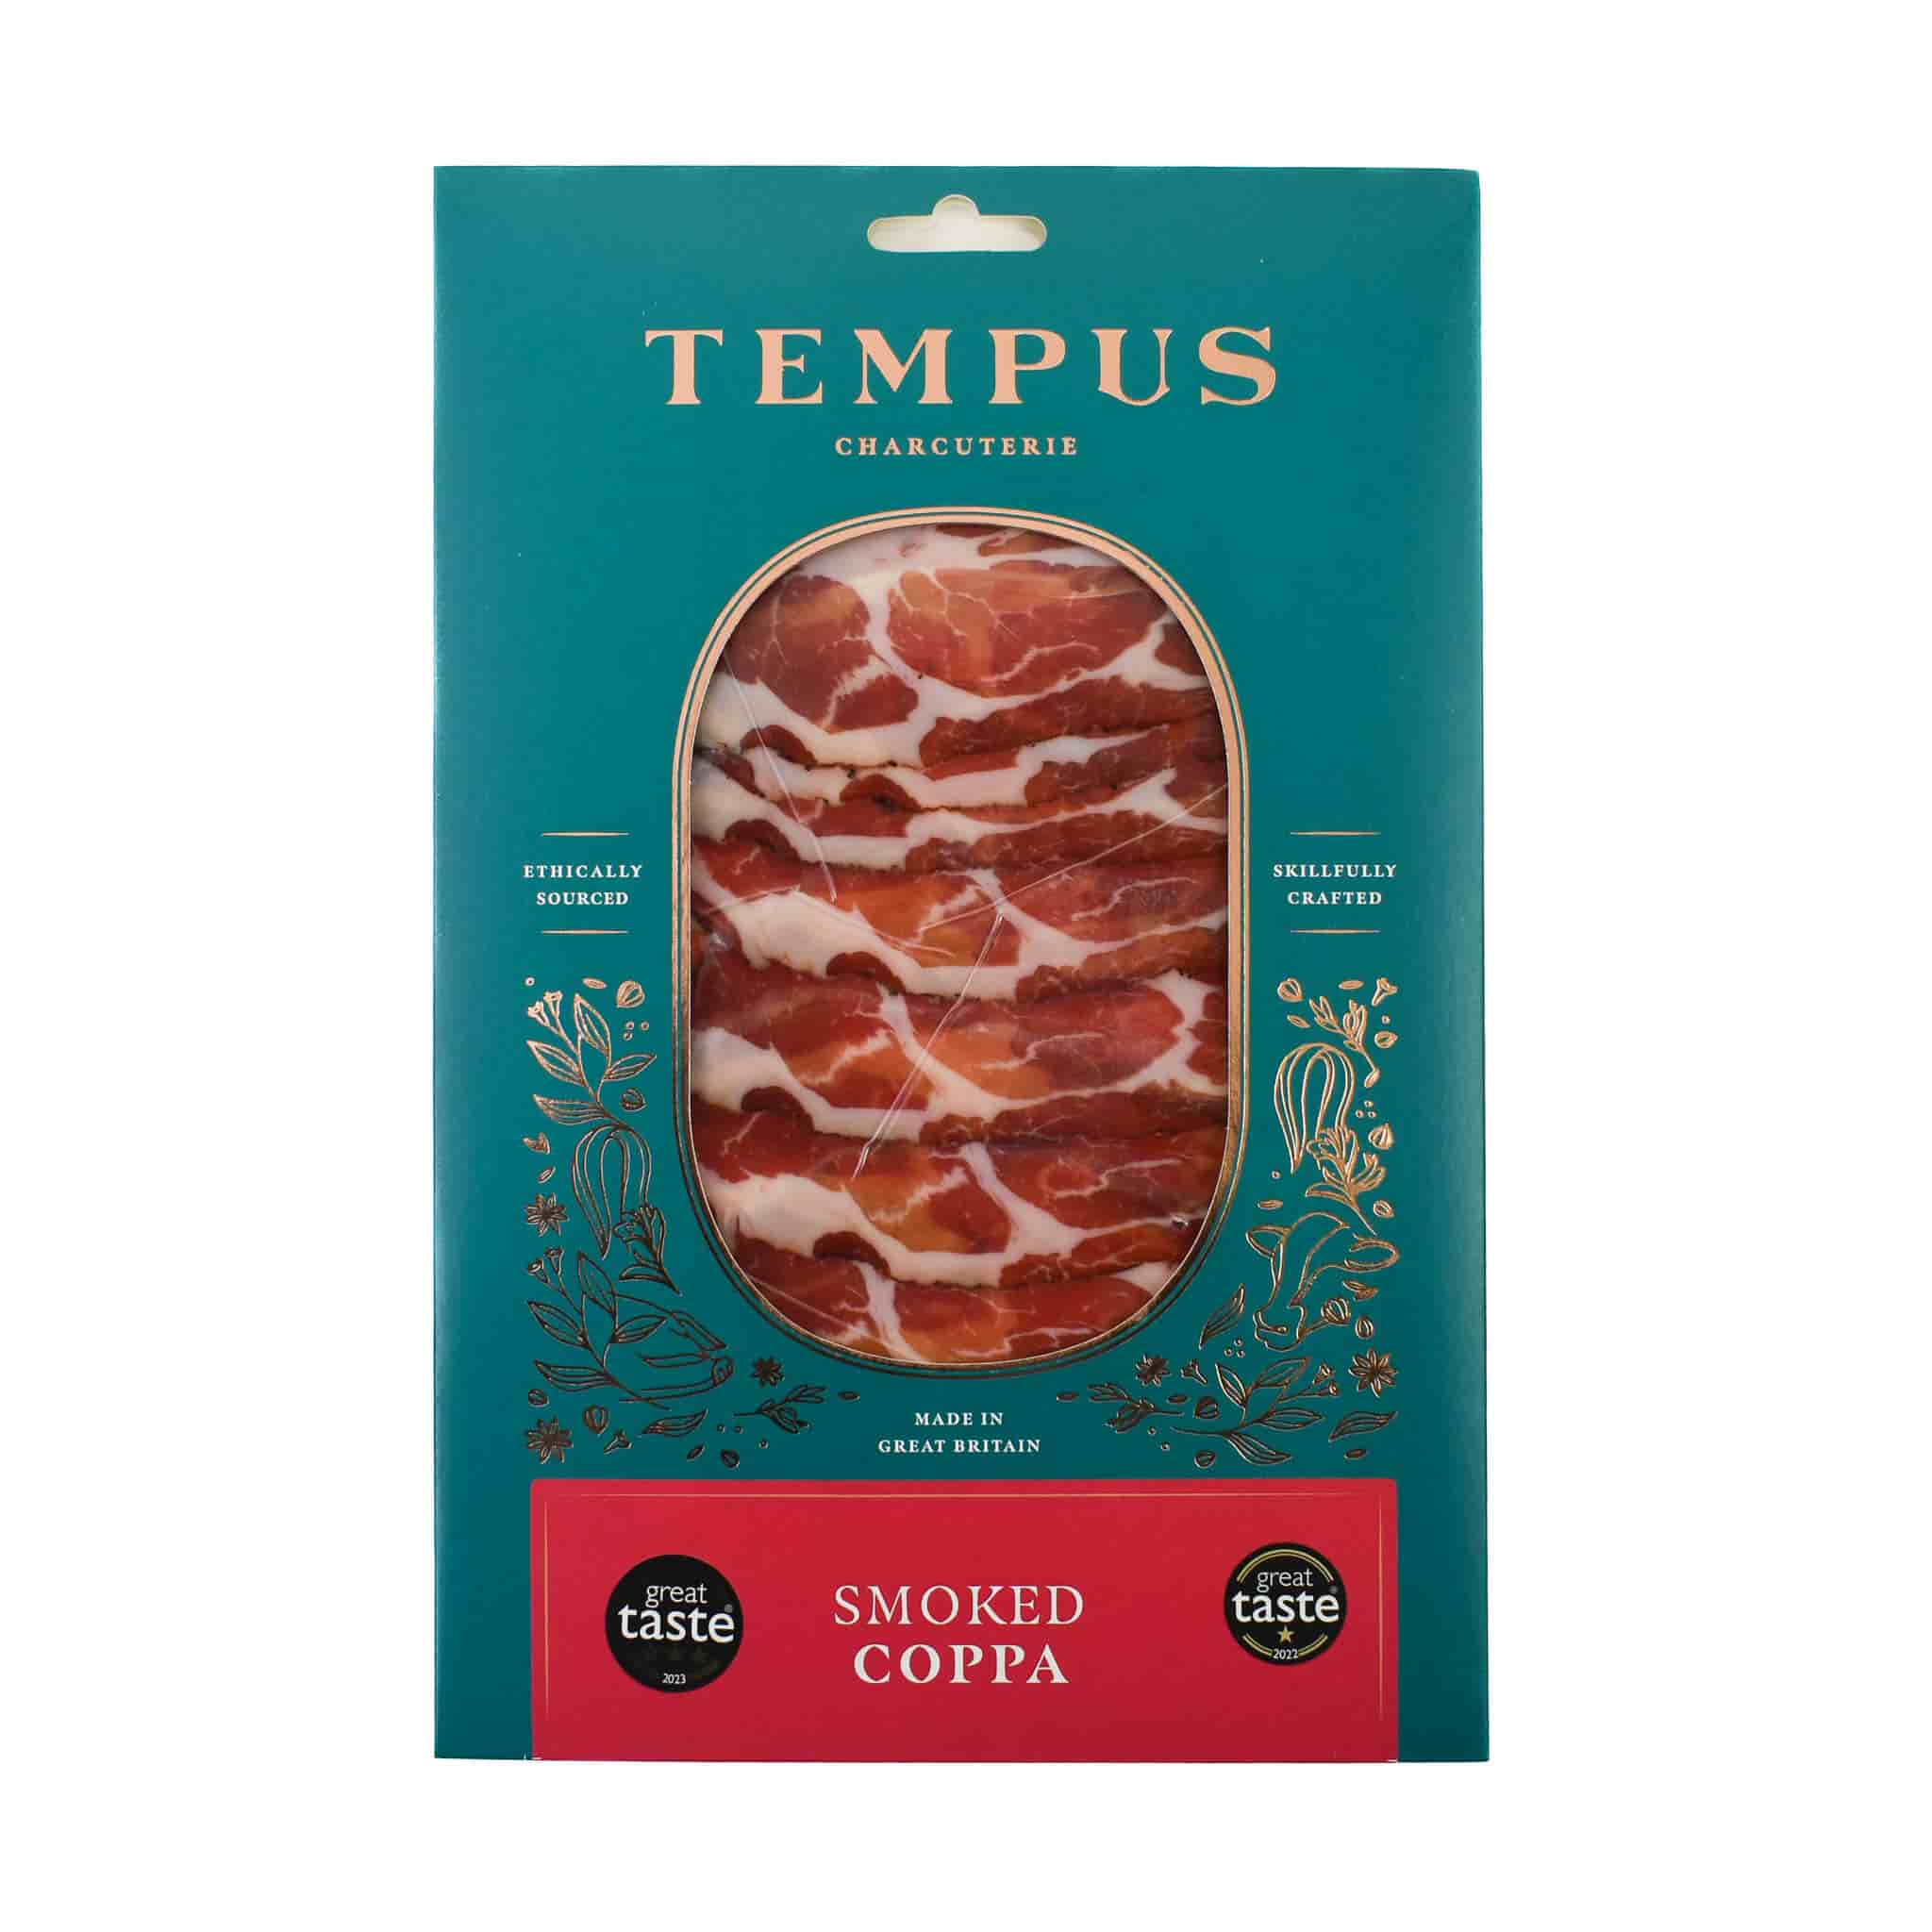 Tempus Smoked Coppa, 60g